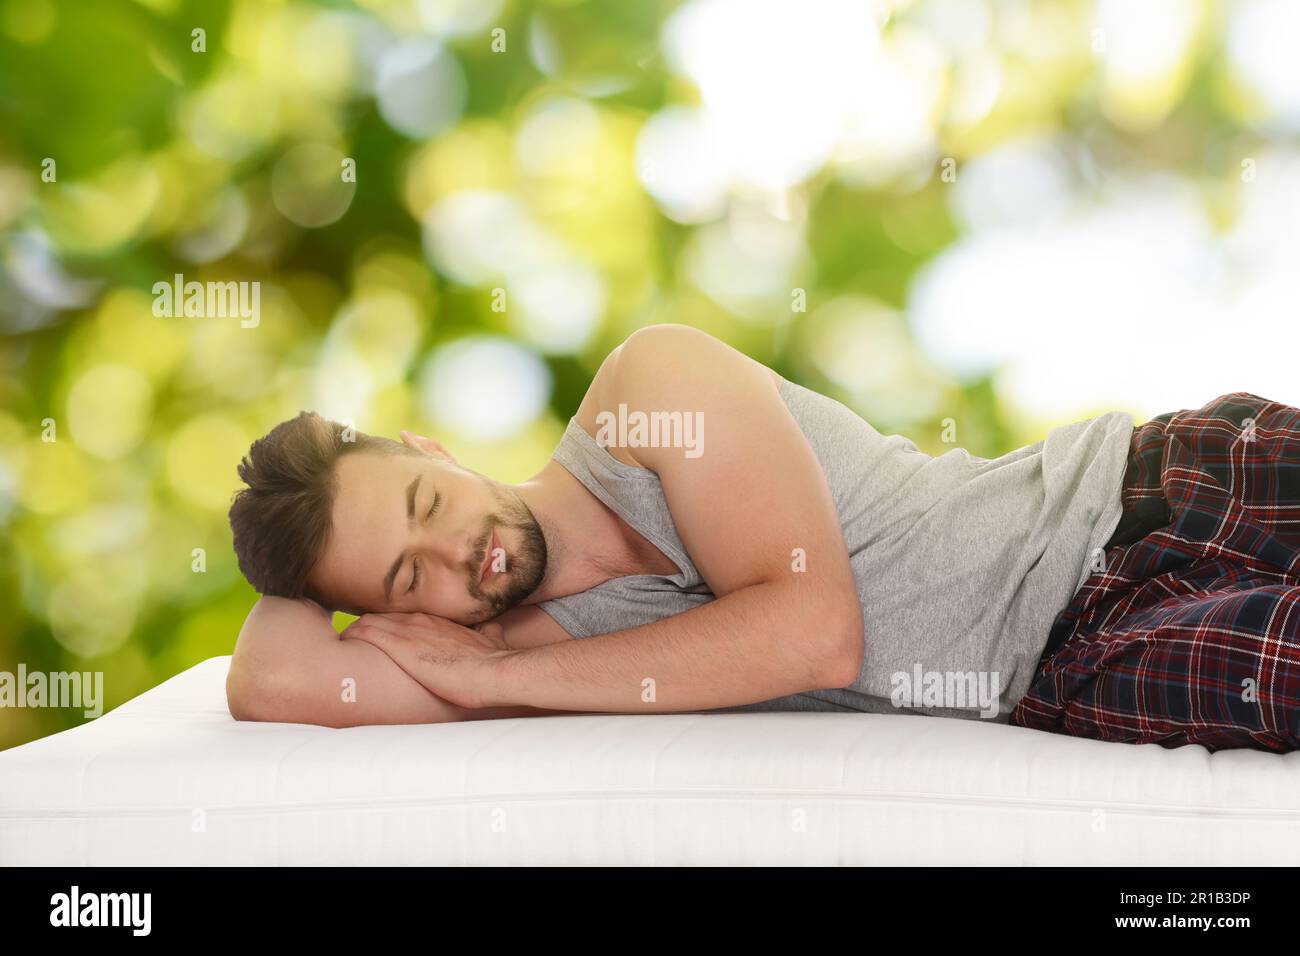 Uomo che dorme su un comodo materasso su sfondo verde sfocato, effetto bokeh. Dormi bene - resta in salute Foto Stock